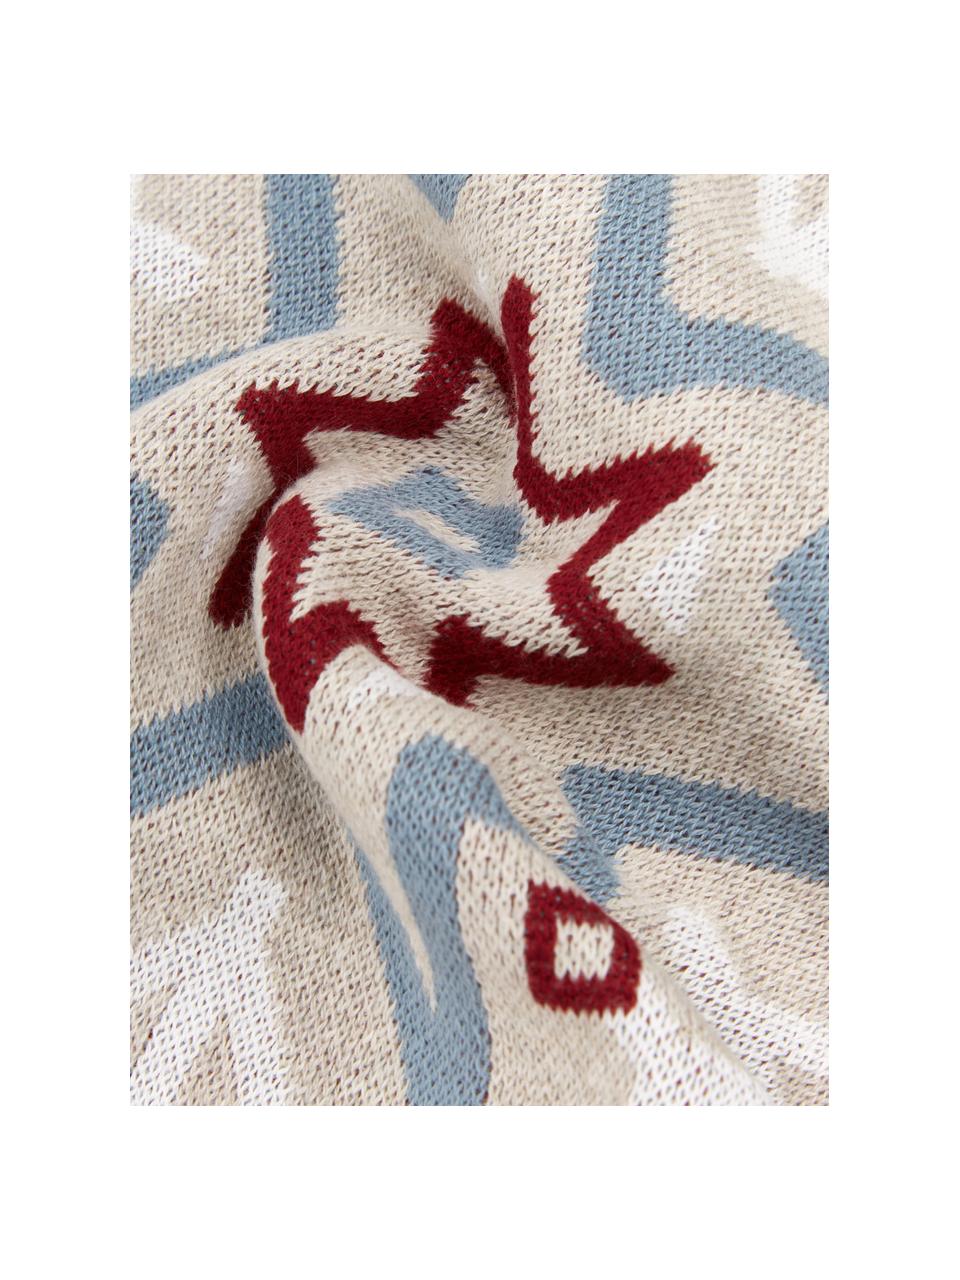 Federa arredo a maglia Snowflake, 100% cotone, Multicolore, Larg. 40 x Lung. 40 cm